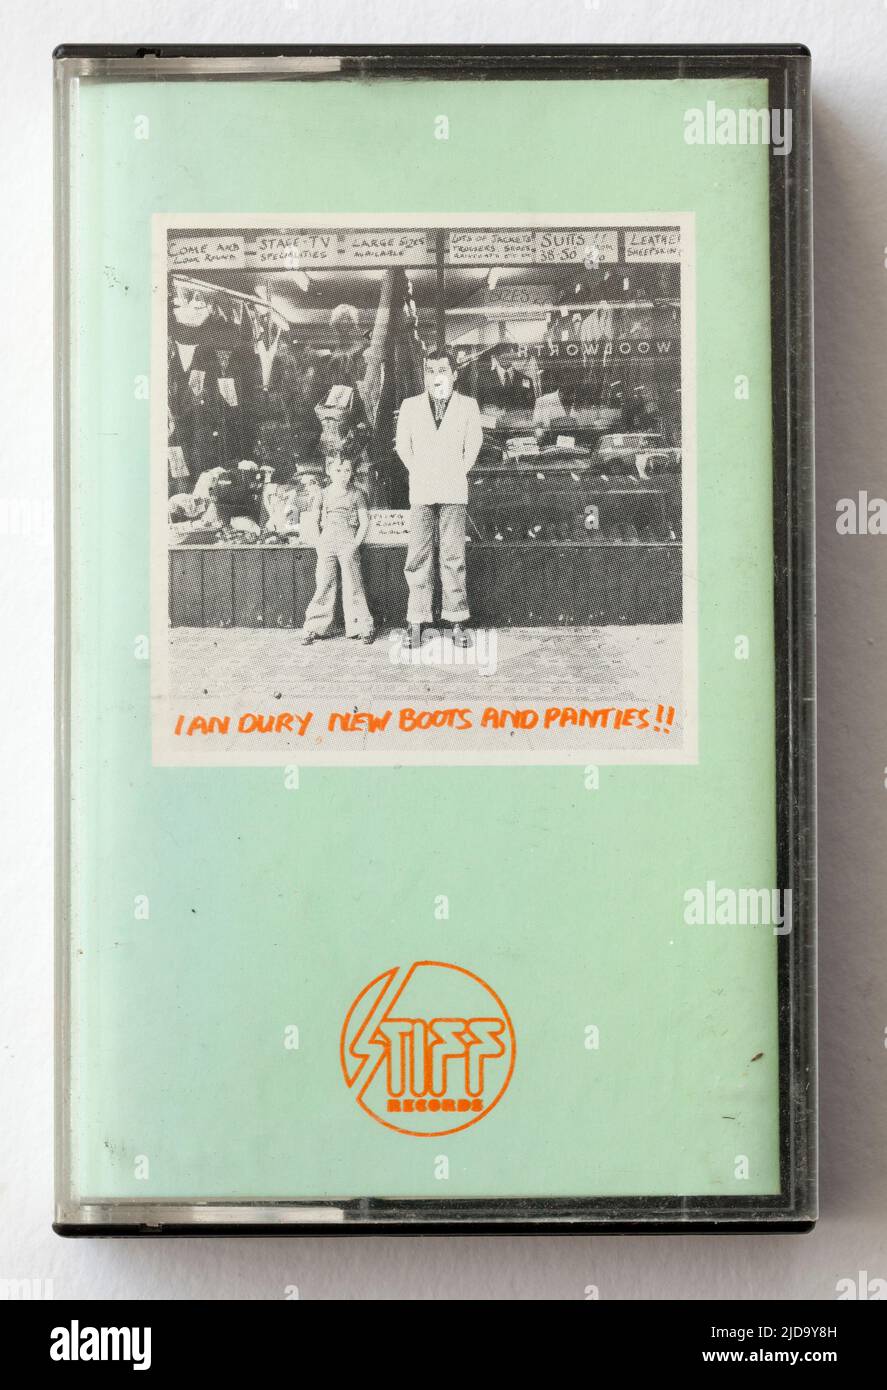 1970s Cassette de música Nuevas botas y Panties de Ian Dury Foto de stock